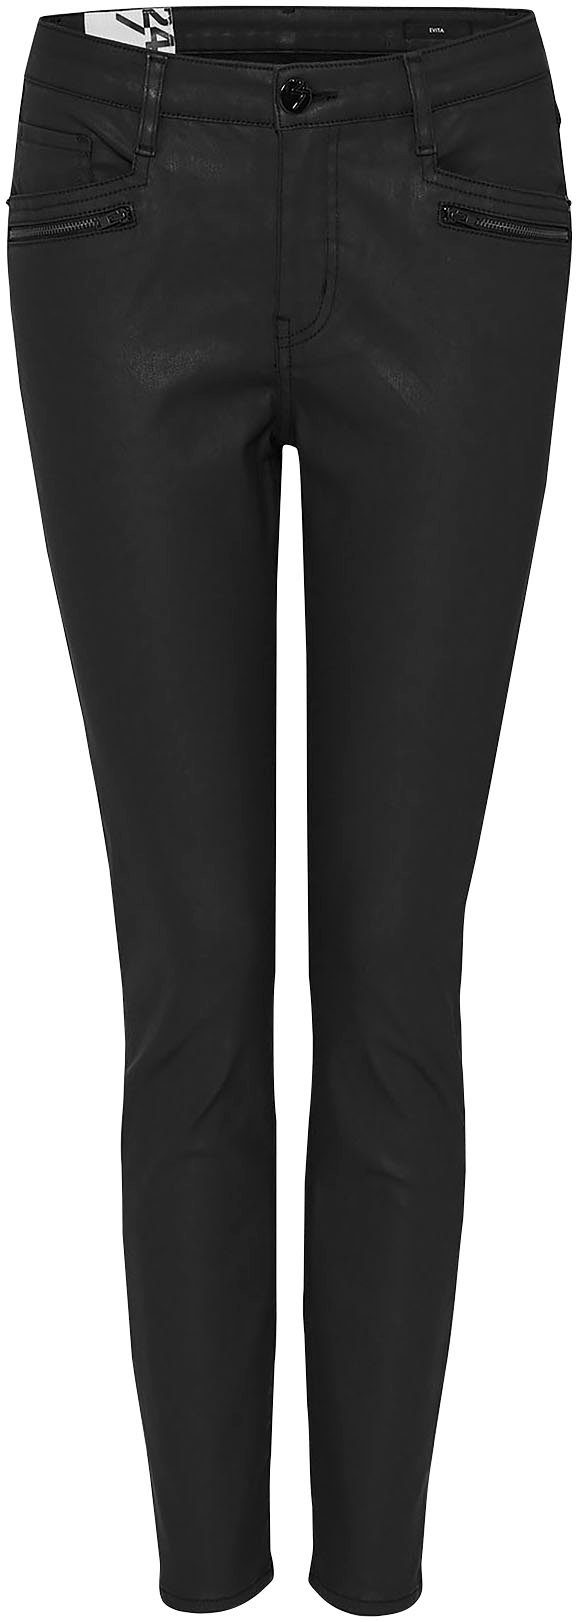 OPUS 5-Pocket-Hose Evita mit schwarz Rießverschluss-Faketaschen